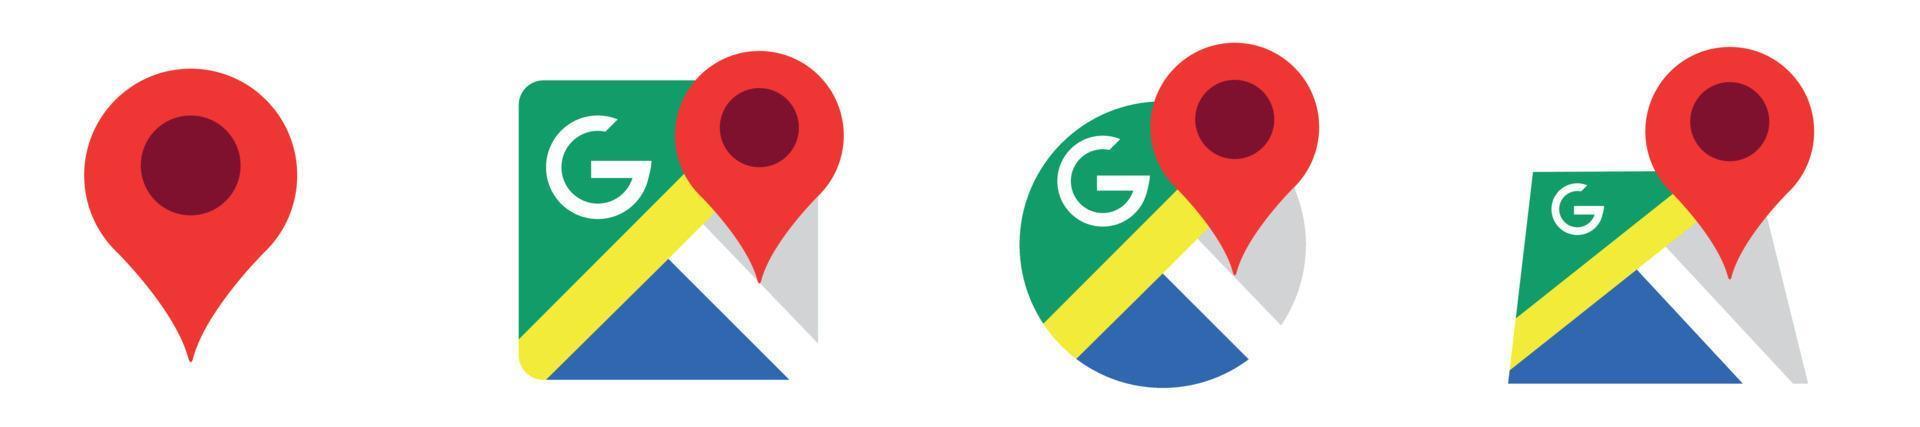 google maps symbolsatz, kartenstiftmarkierungen, standortsymbolsymbol, globales positionierungssystemzeichen, vektorillustration vektor